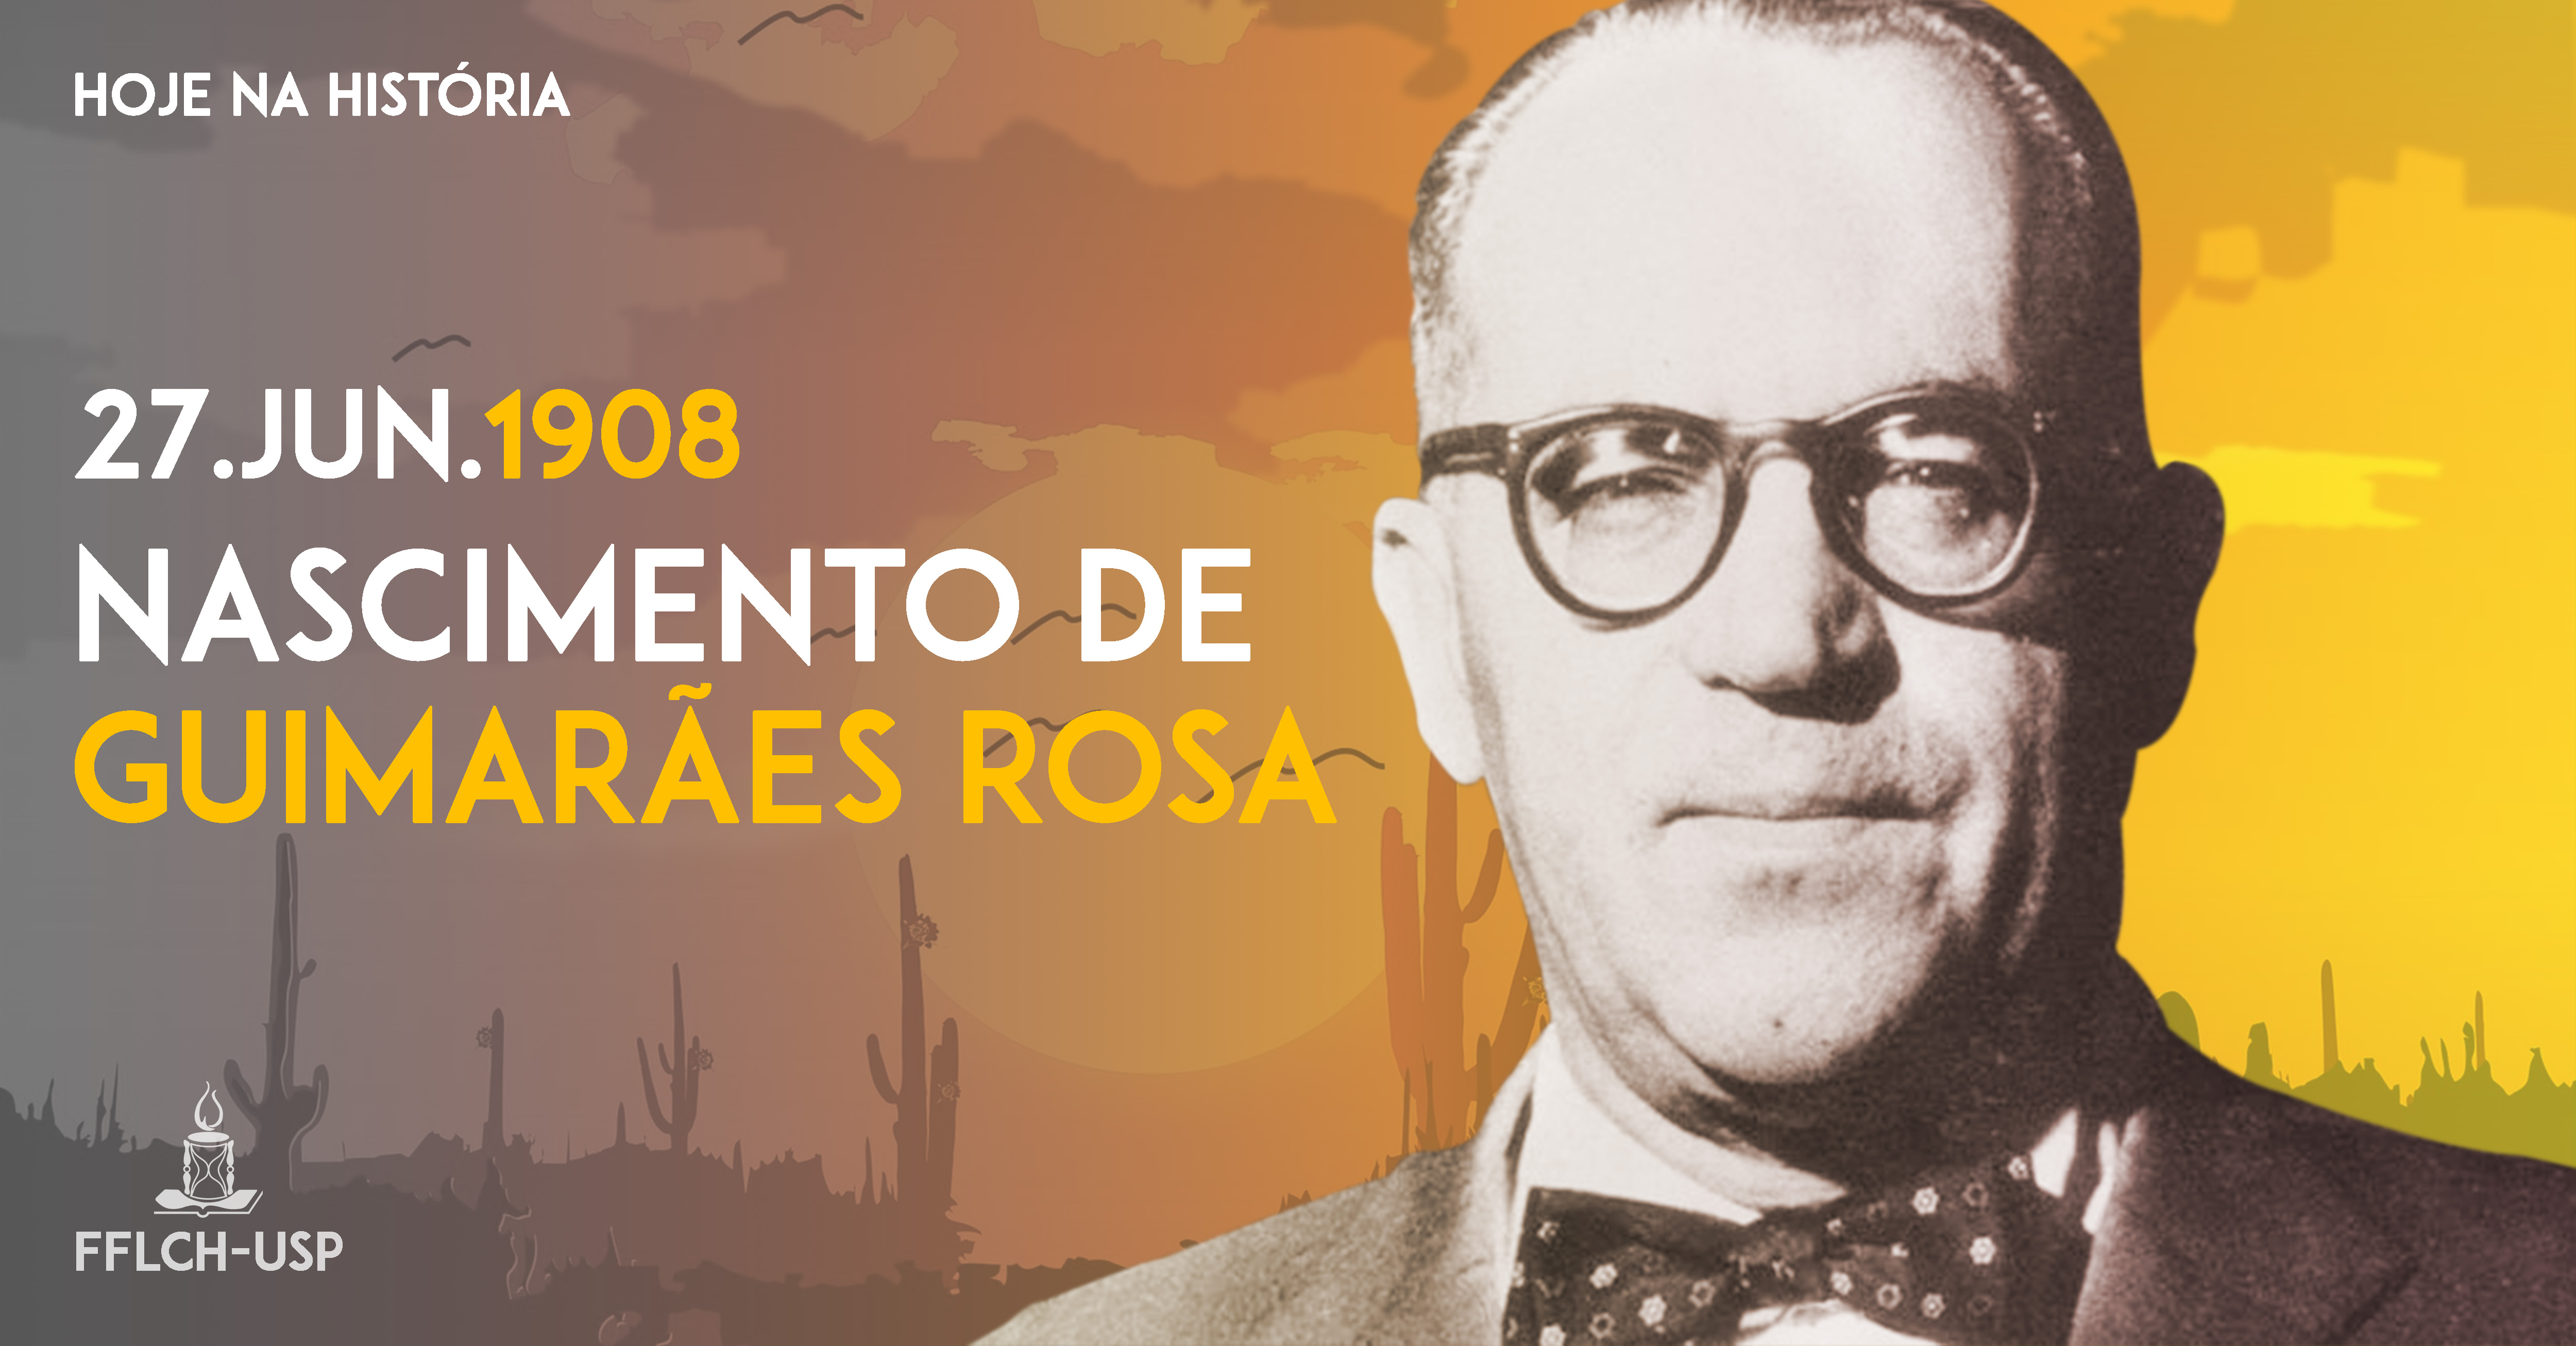 Hoje na História: Nascimento de Guimarães Rosa